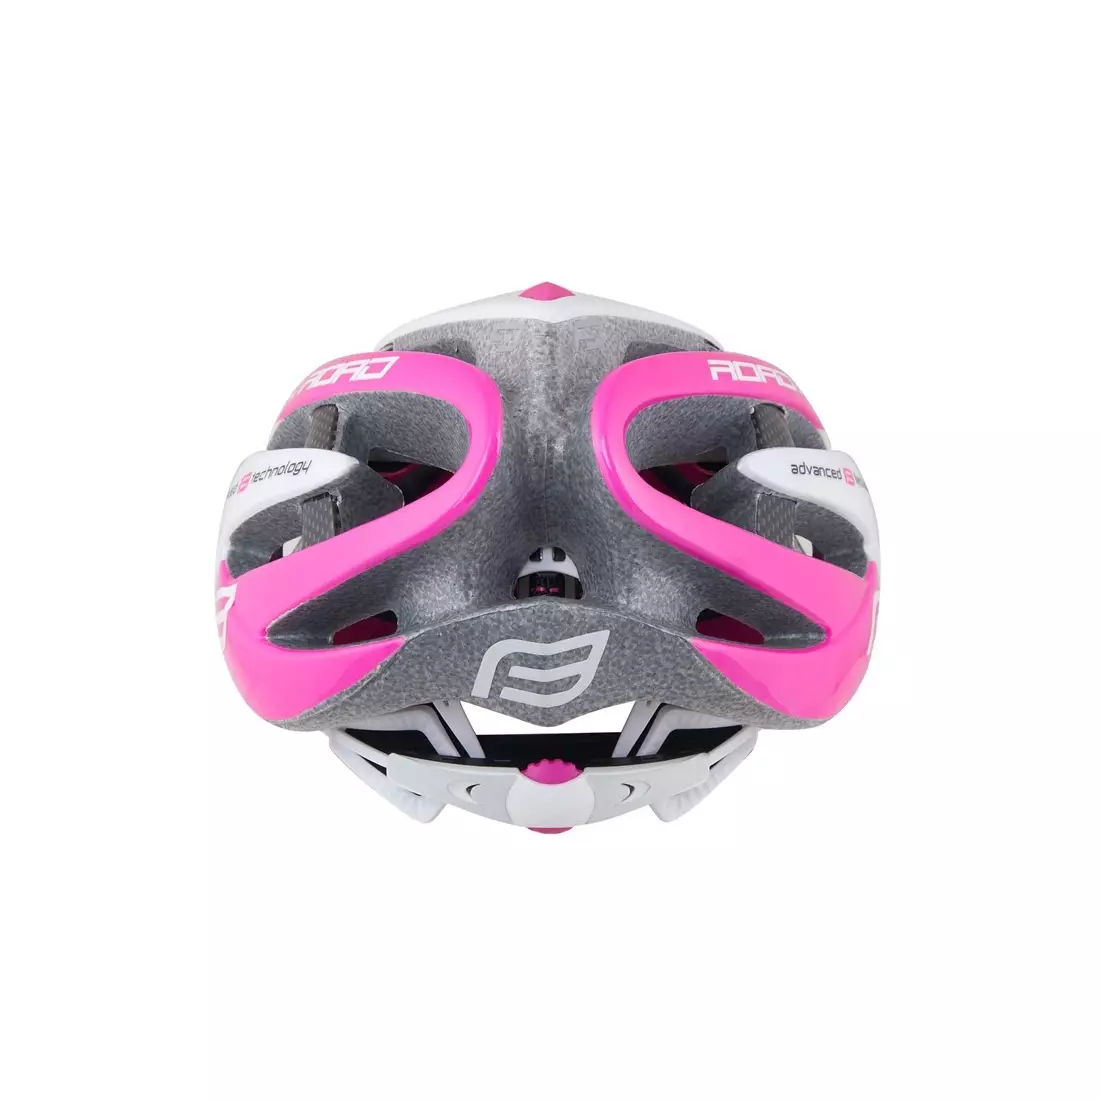 FORCE casca de bicicleta pentru femei, negru și roz 902616